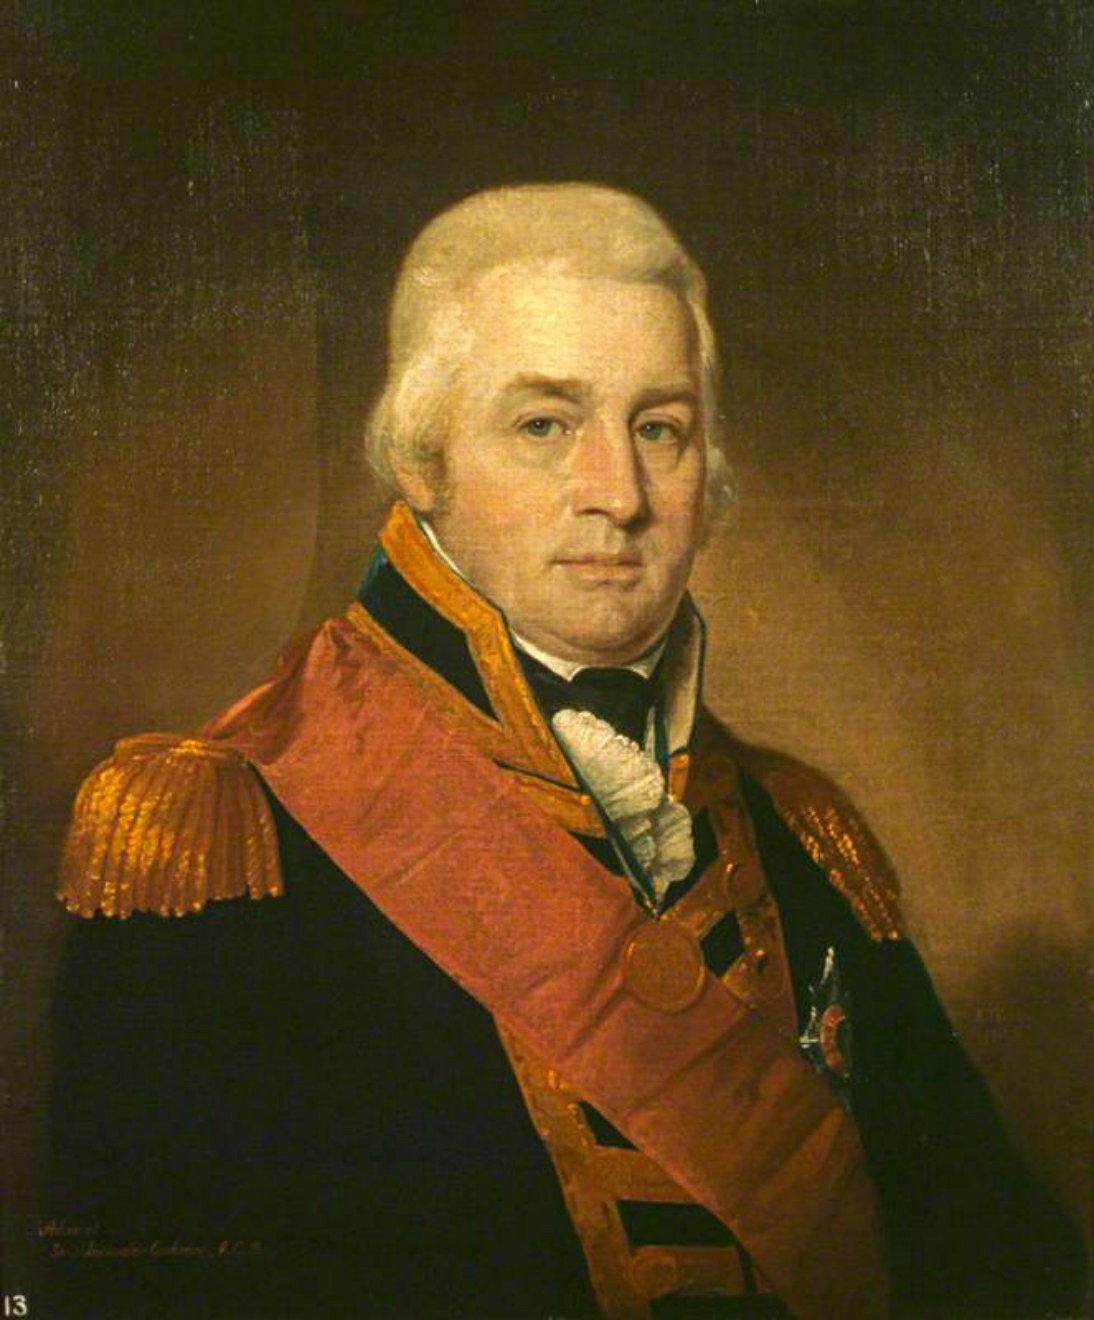 دریاسالار الکساندر اینگلیس کوکرین (1758–1832)، فرماندار گوادلوپ